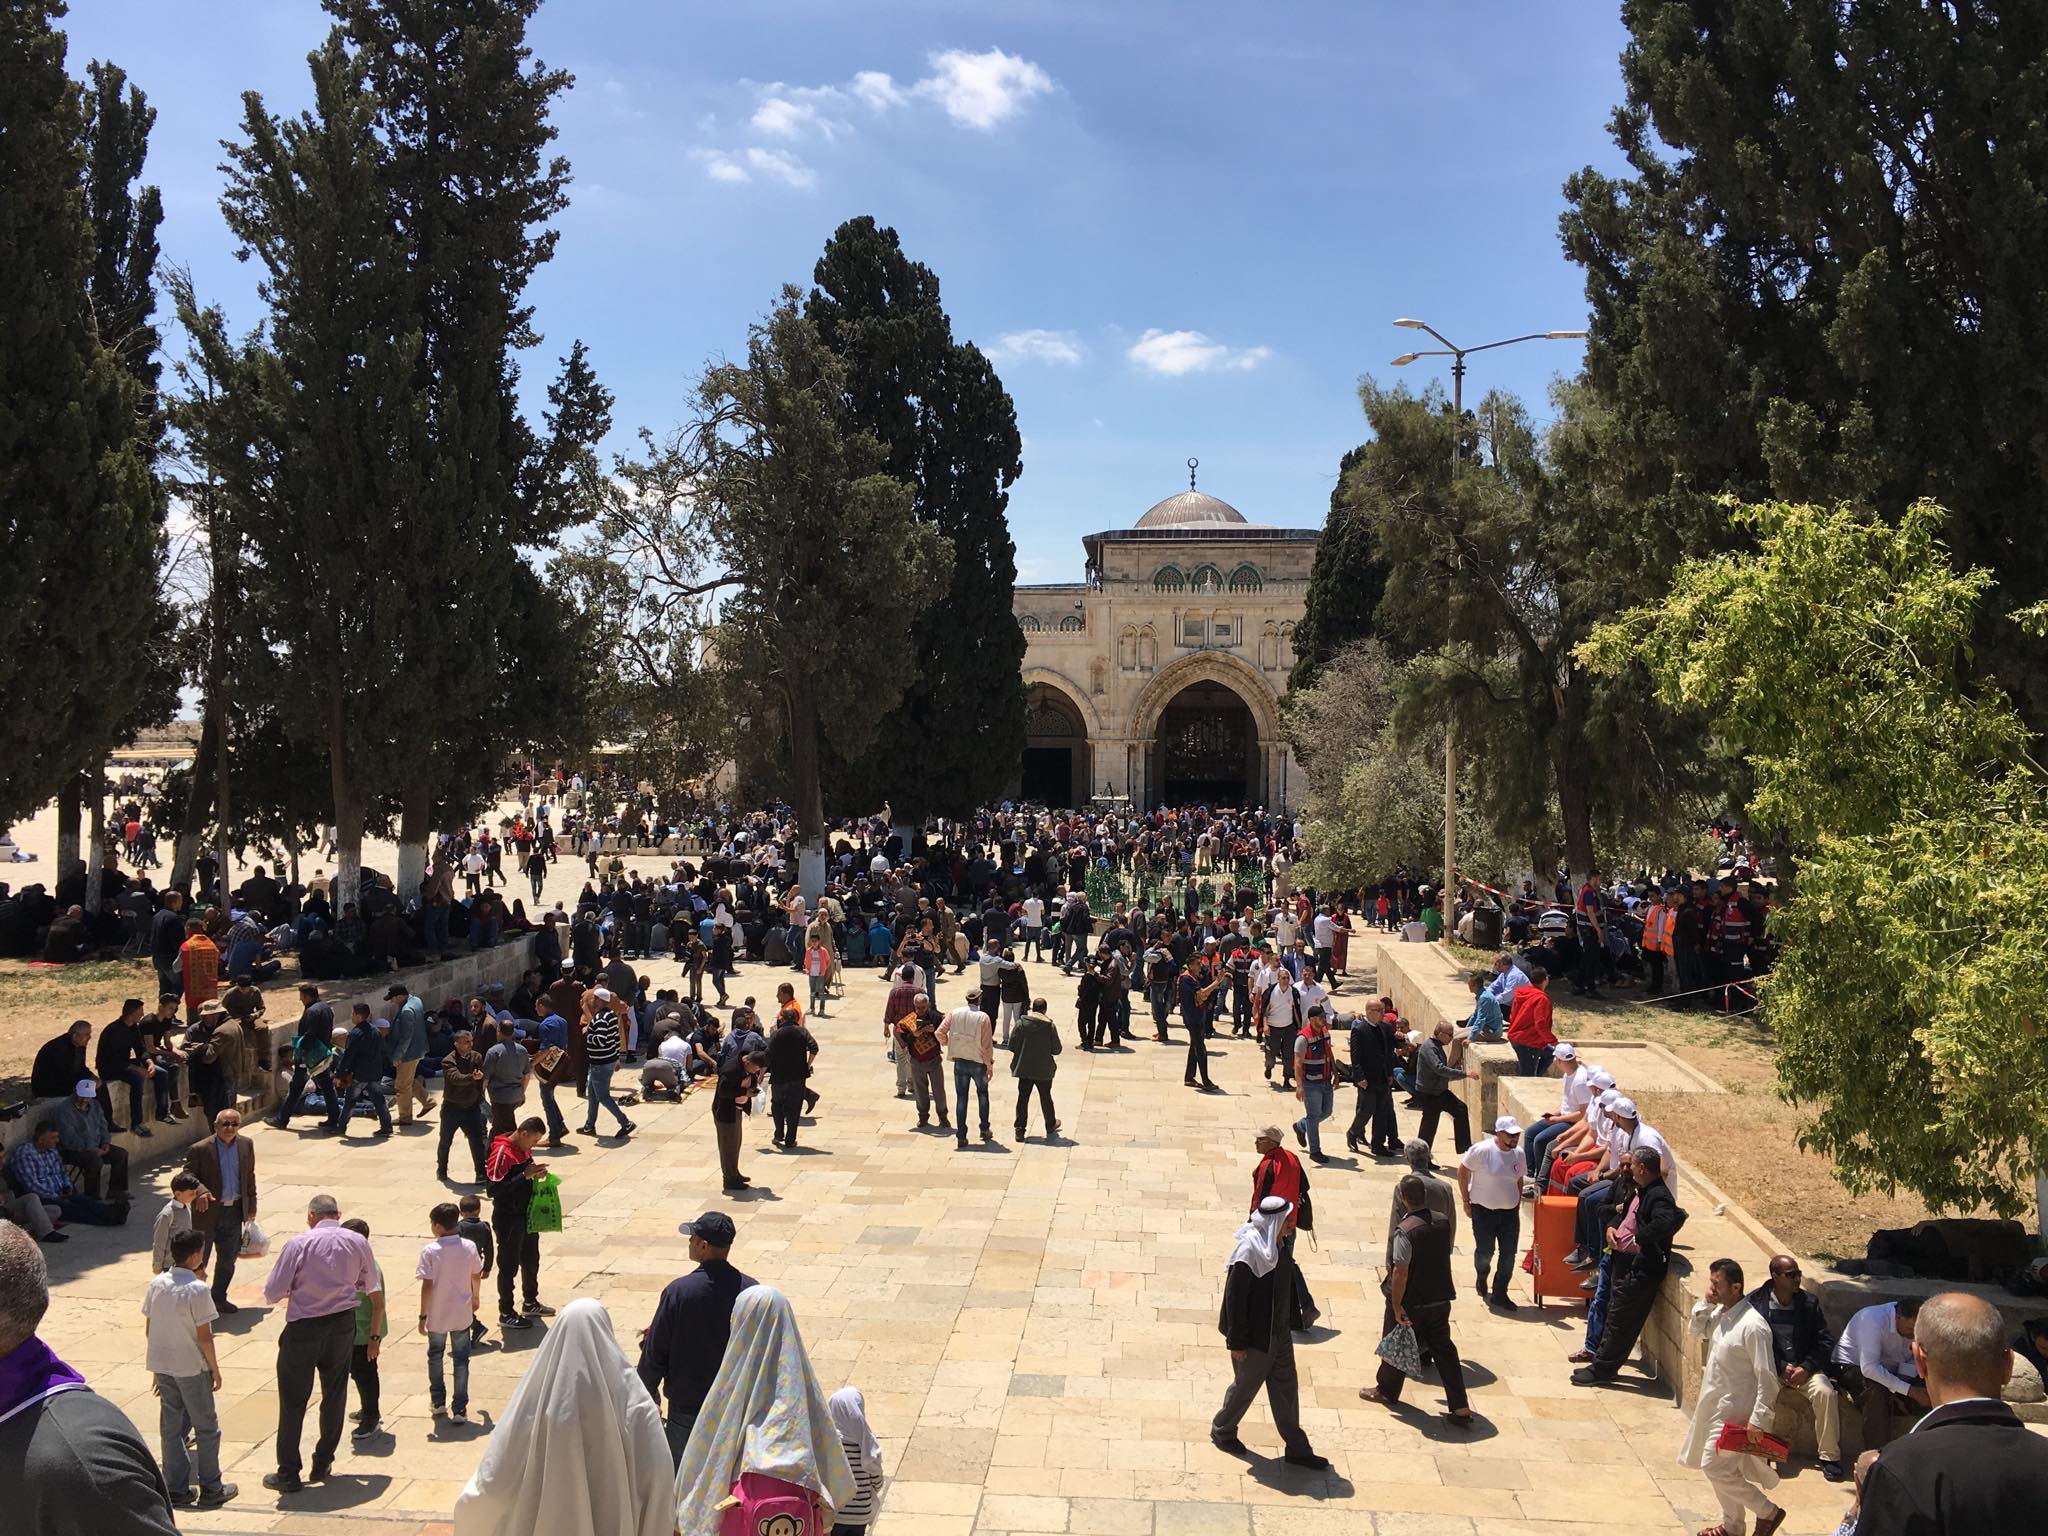 180 الف  يؤدون صلاة الجمعة الأولى من رمضان في رحاب المسجد الاقصى  وسط إجراءات أمنية إسرائيلية مشددة